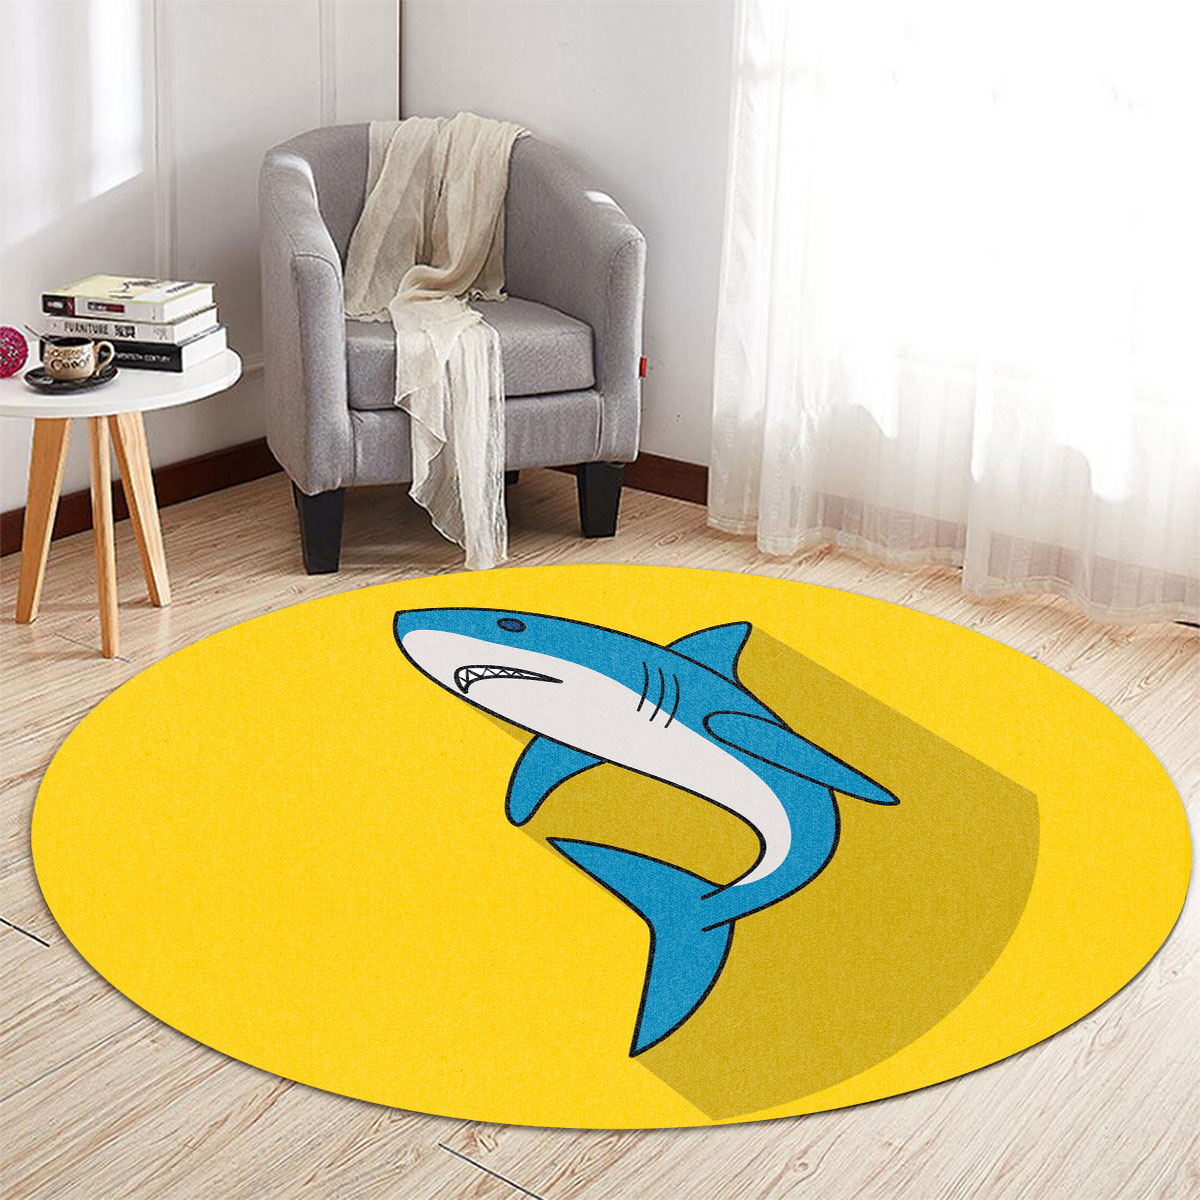 Great White Shark On Yellow Round Carpet